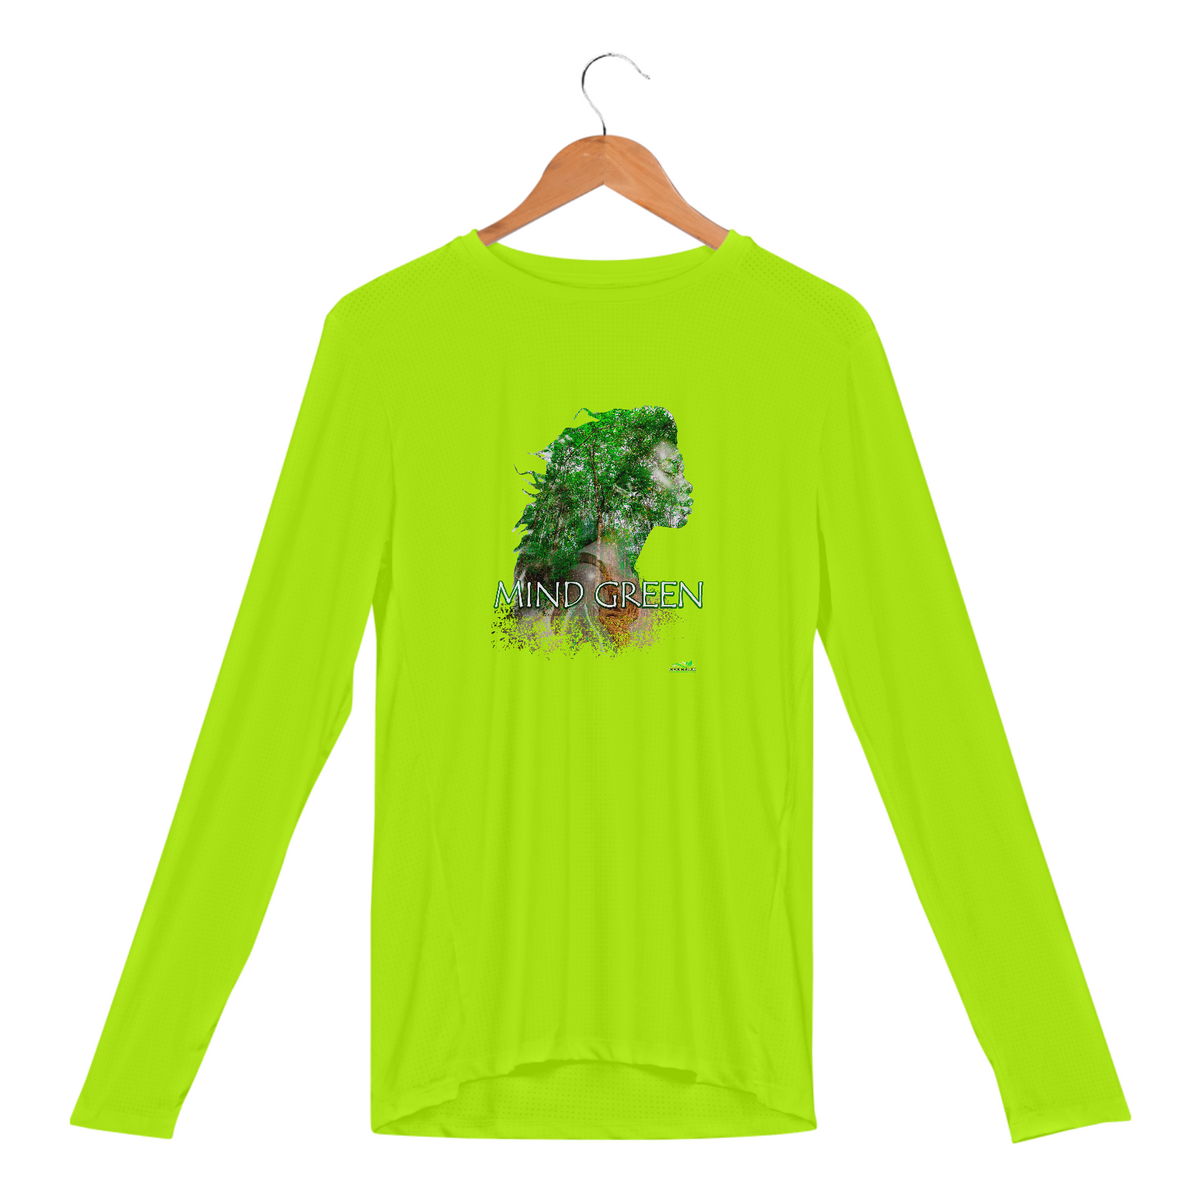 Nome do produto: Espirito da floresta 7 - Camiseta Manga Longa Sport Dry Fit UV